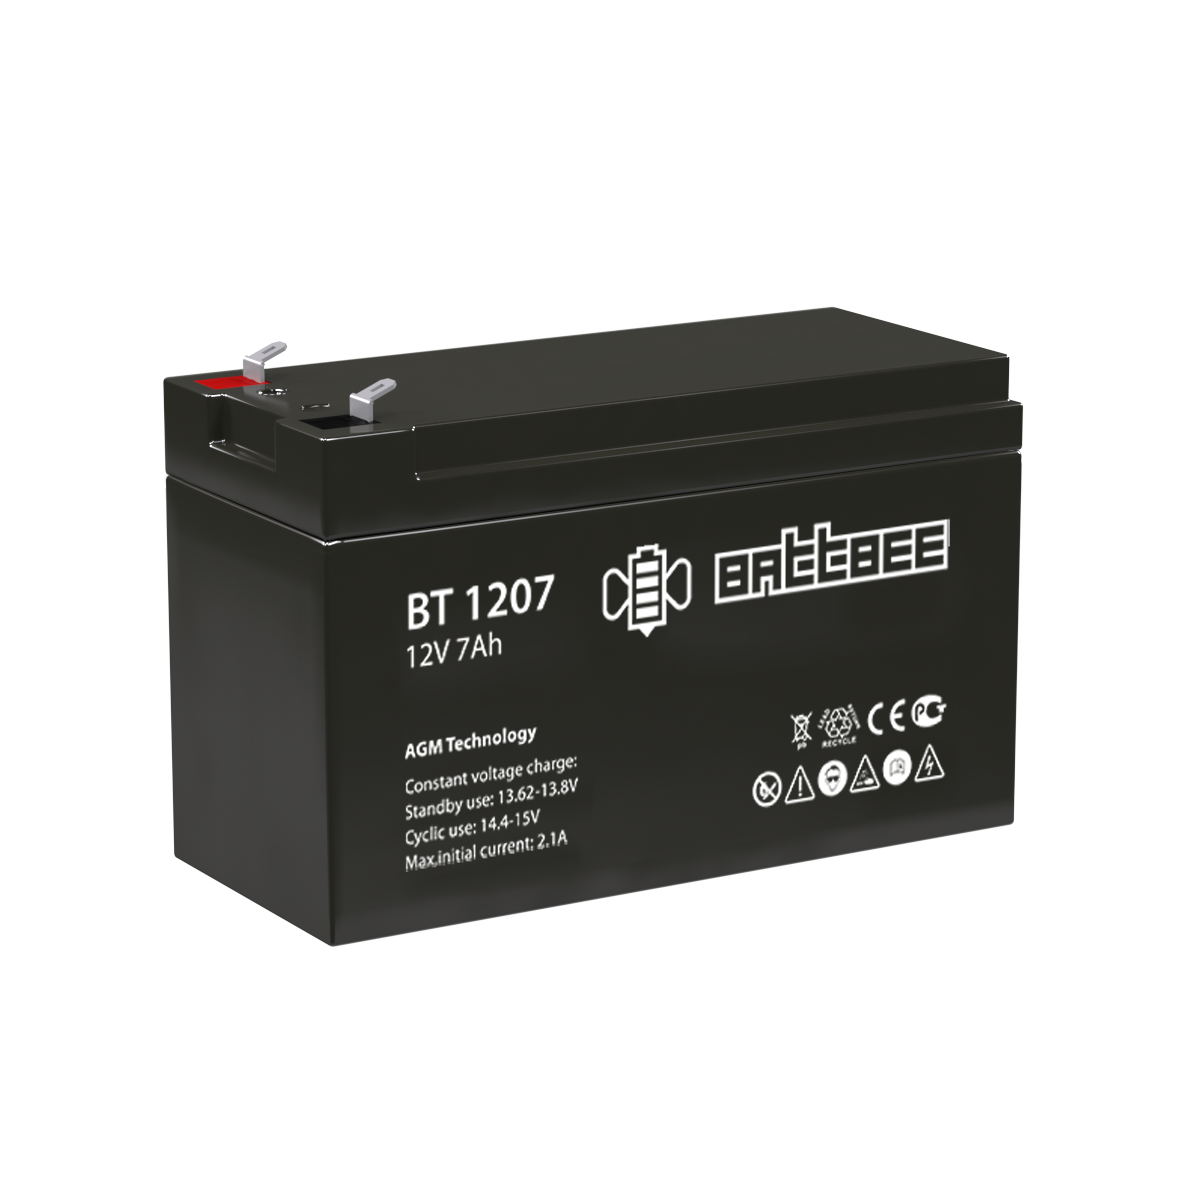 Детальное изображение товара "Аккумуляторная батарея Battbee BT1207 12v 7Ah" из каталога оборудования для видеонаблюдения